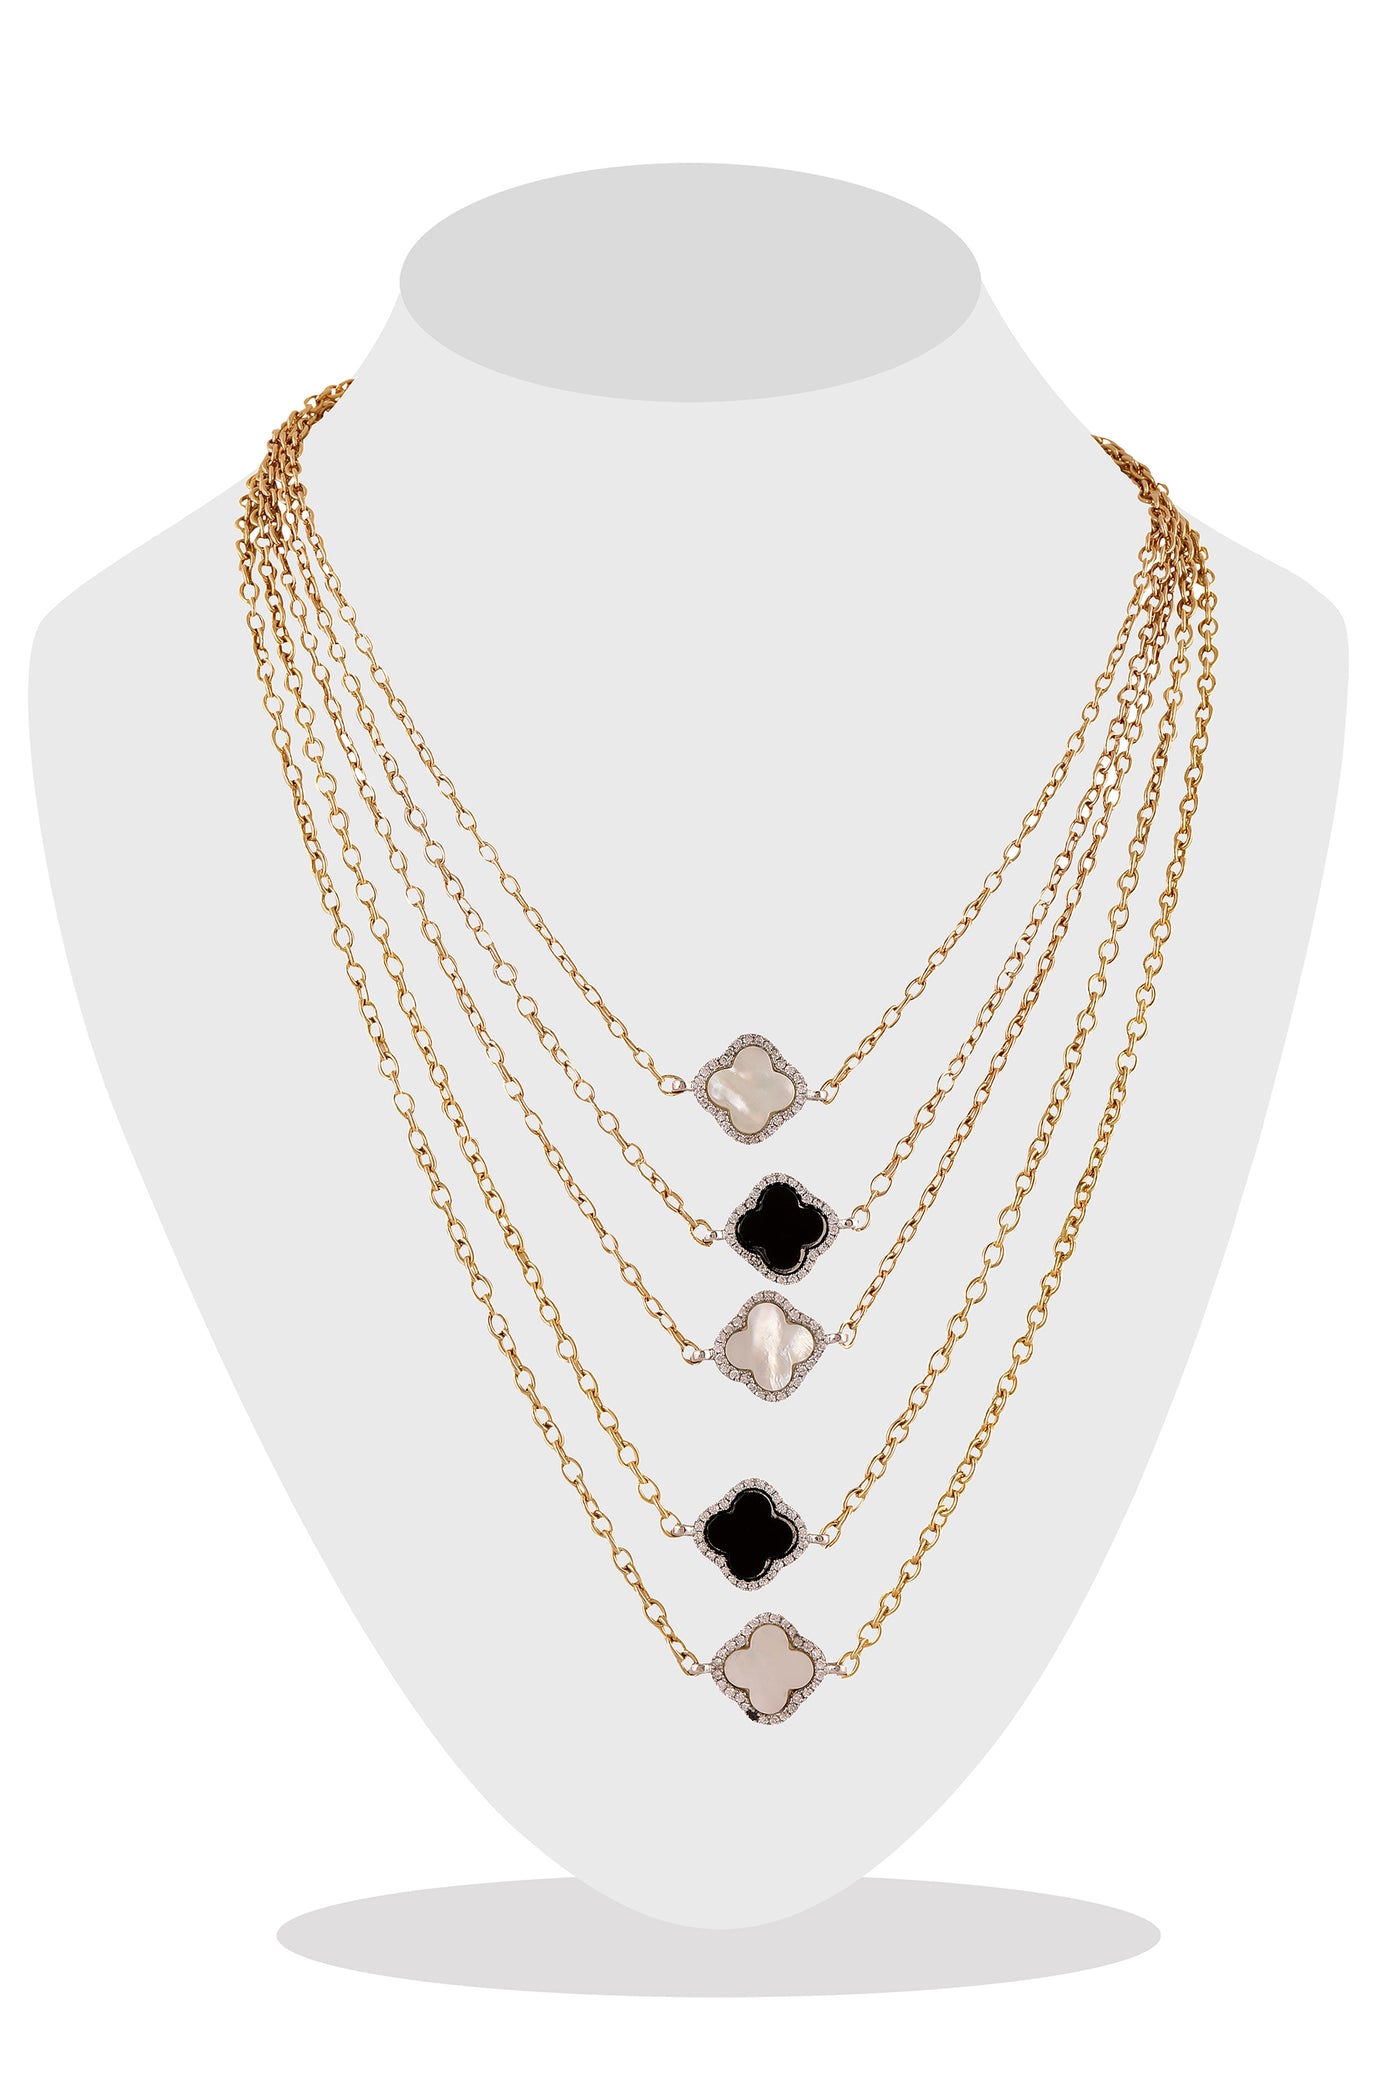 Raya jewels Monochrome Layered Necklace fashion jewellery online shopping melange singapore indian designer wear